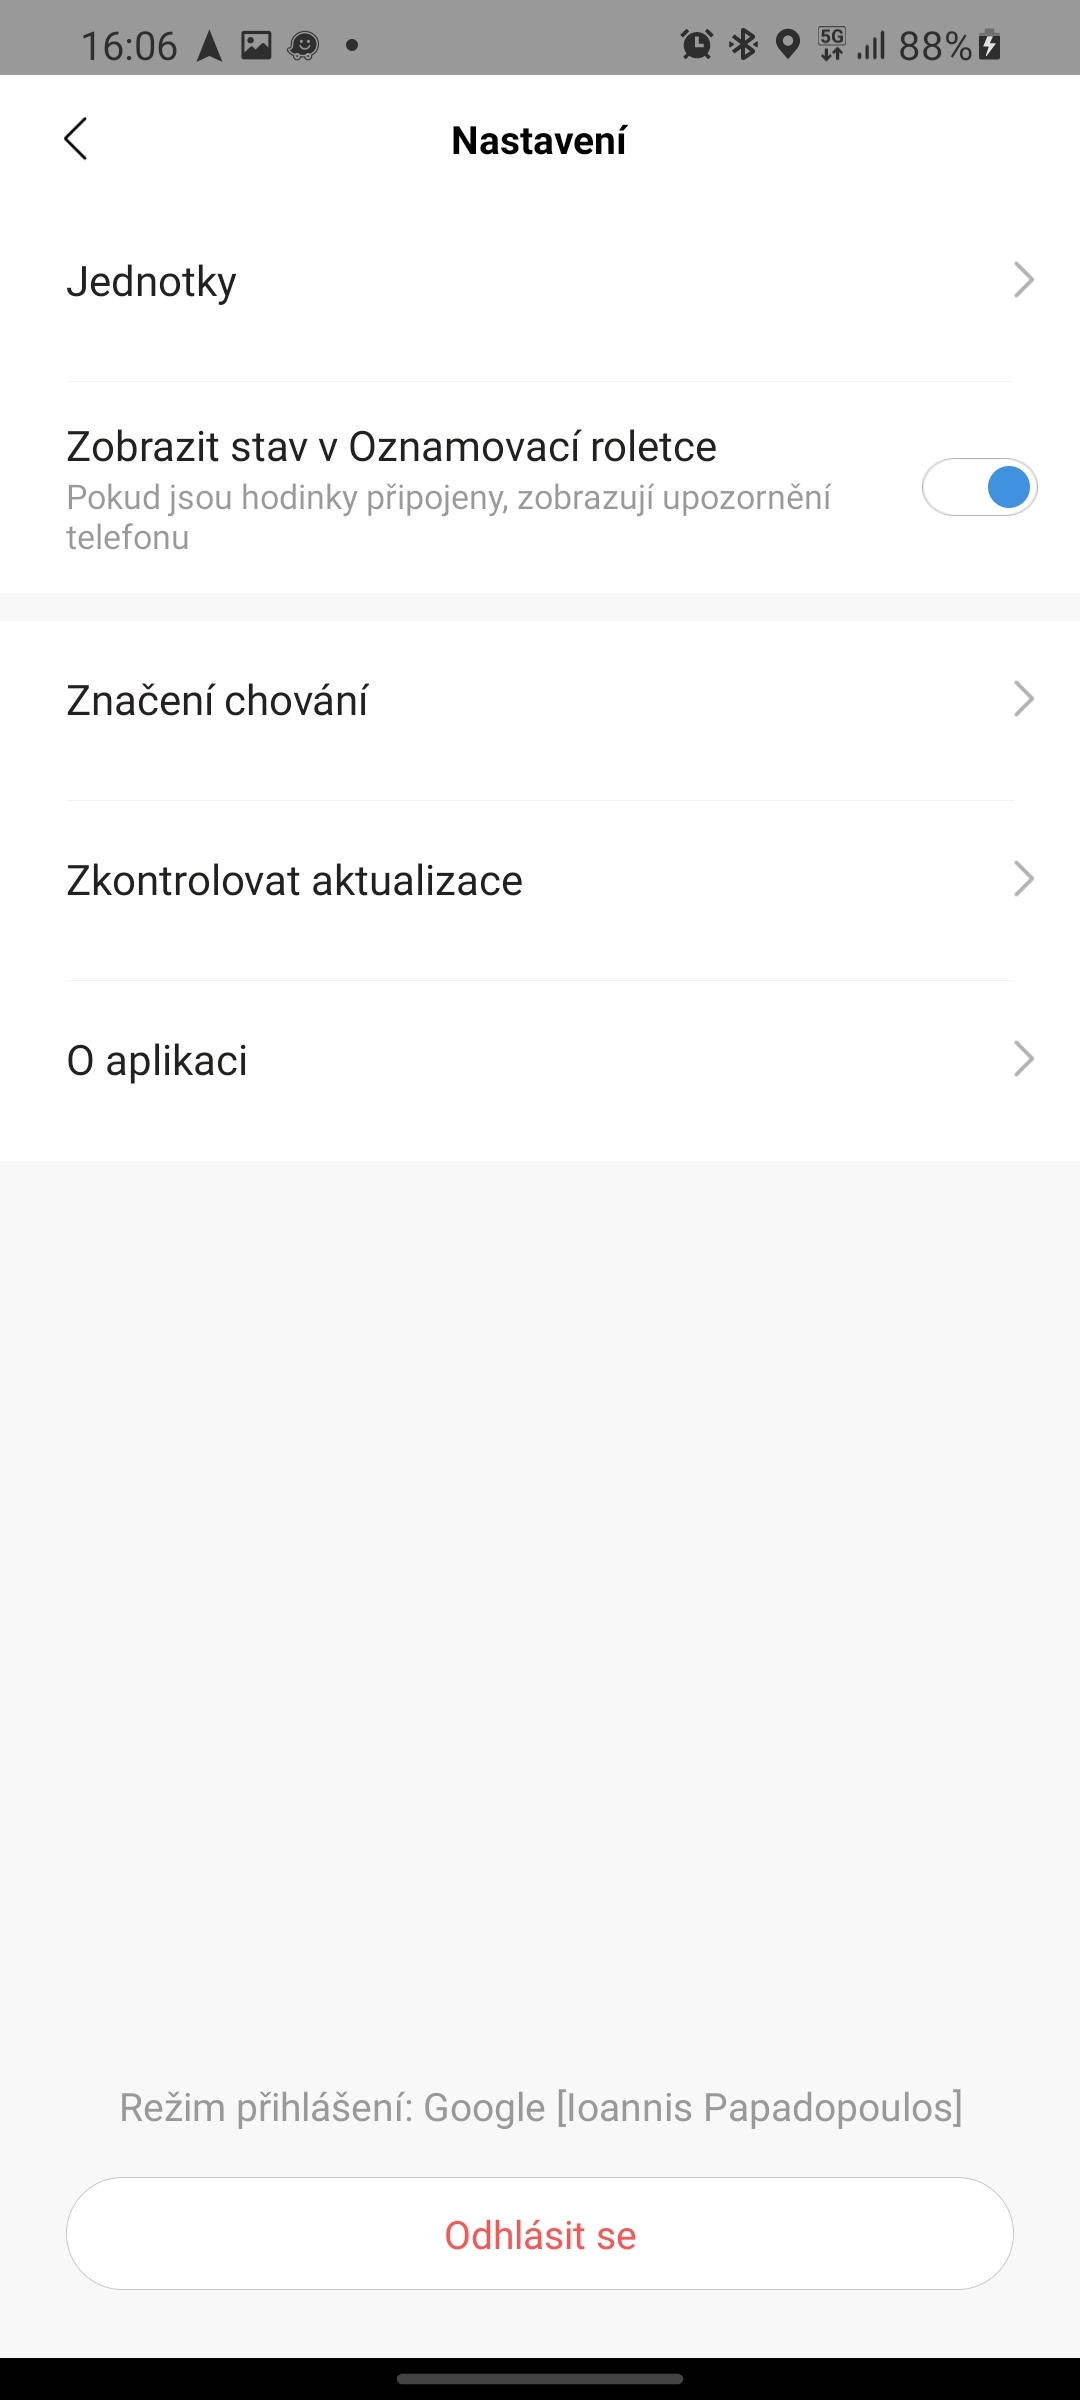 Xiaomi Amazfit GTR 2